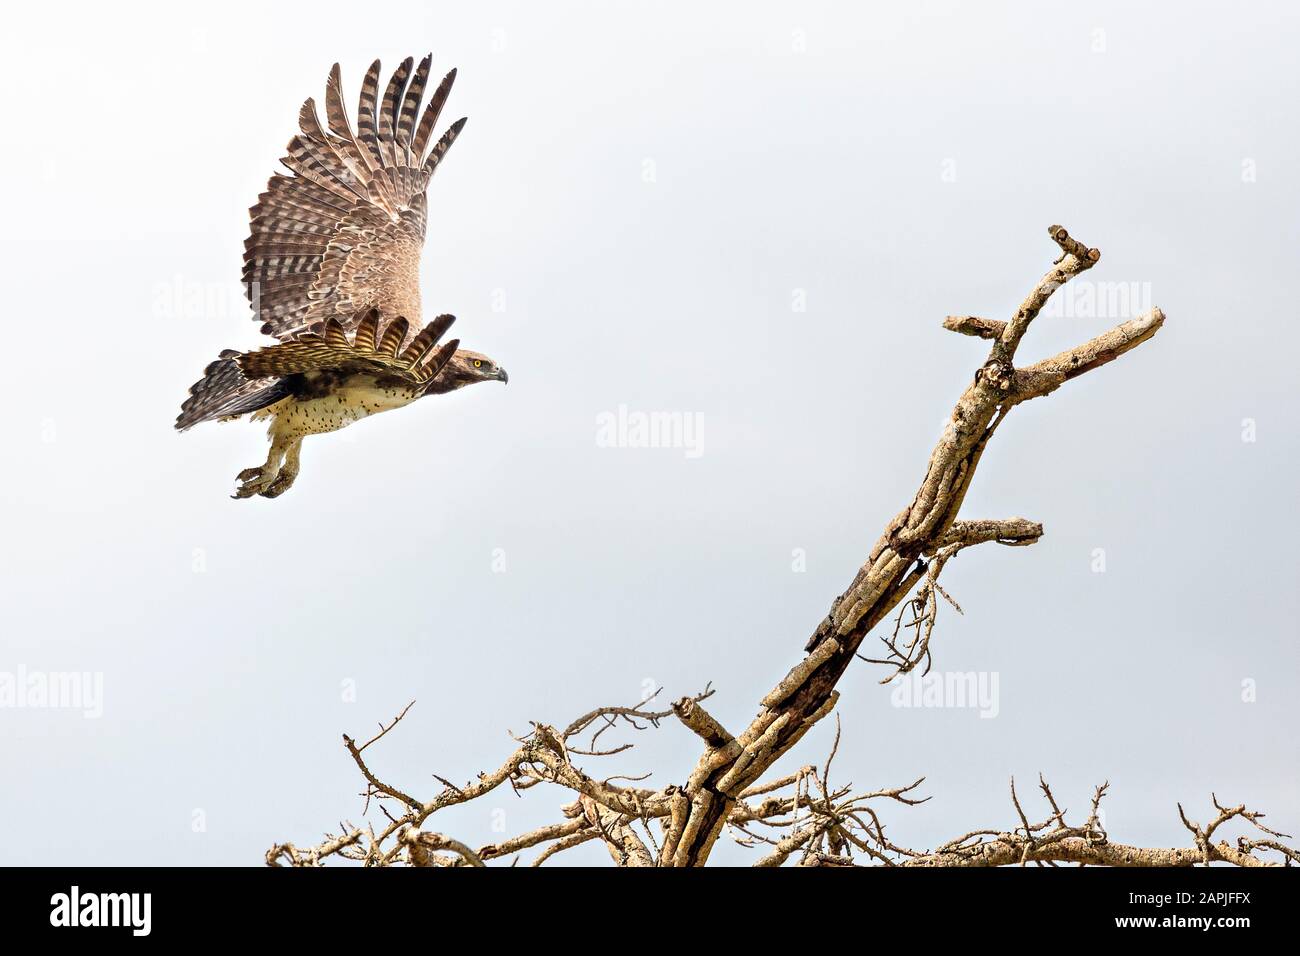 Tawny eagle in flight, in Uganda, Africa Stock Photo